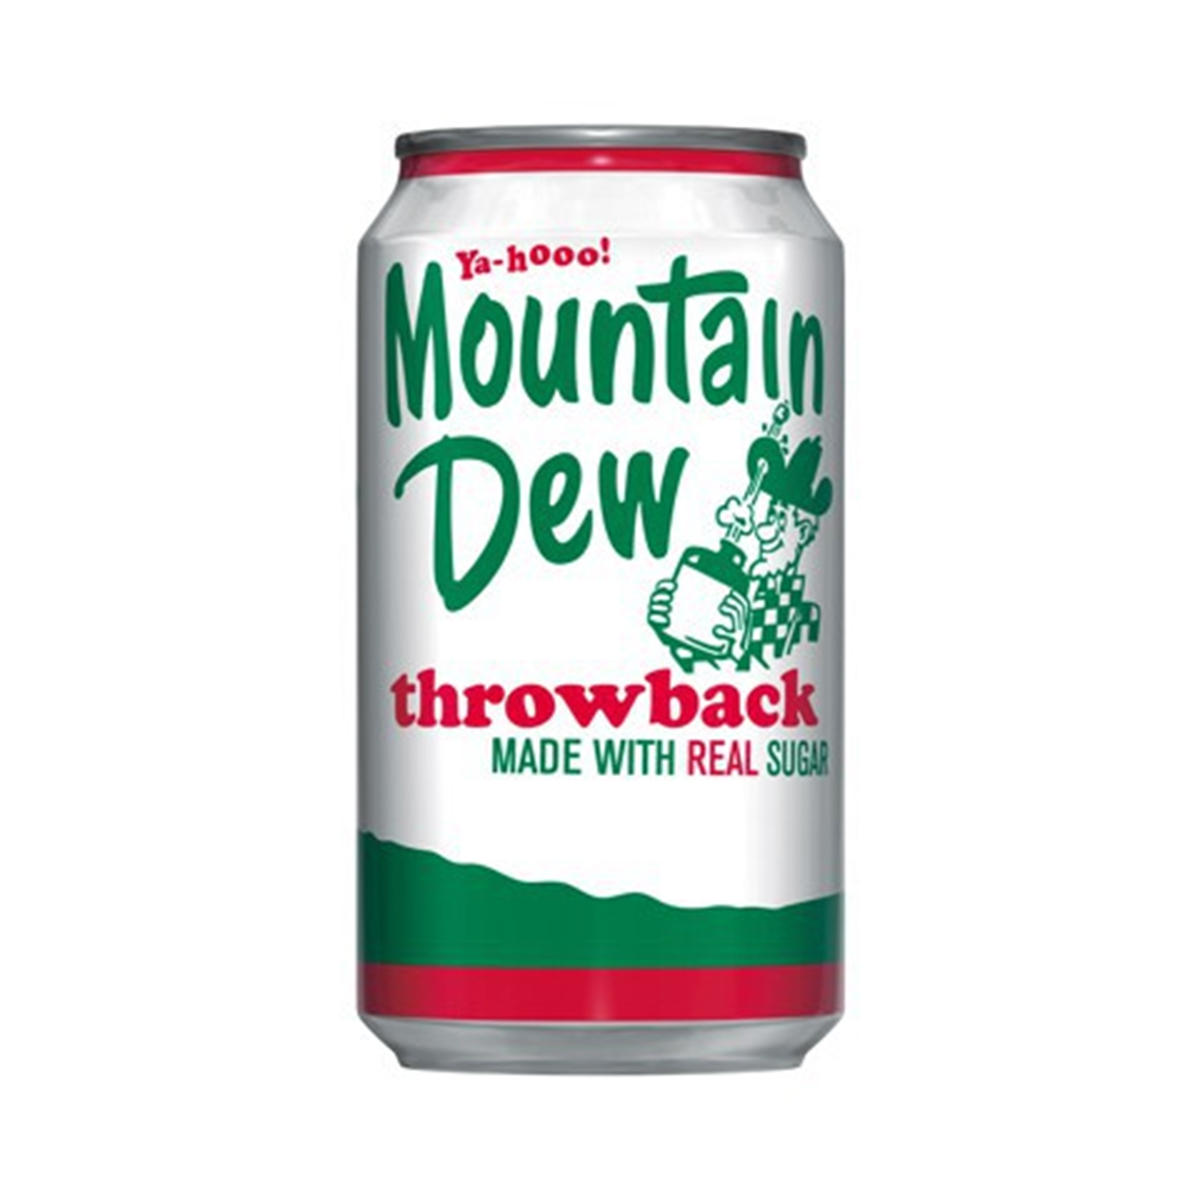 mountaindew-throwback.jpg